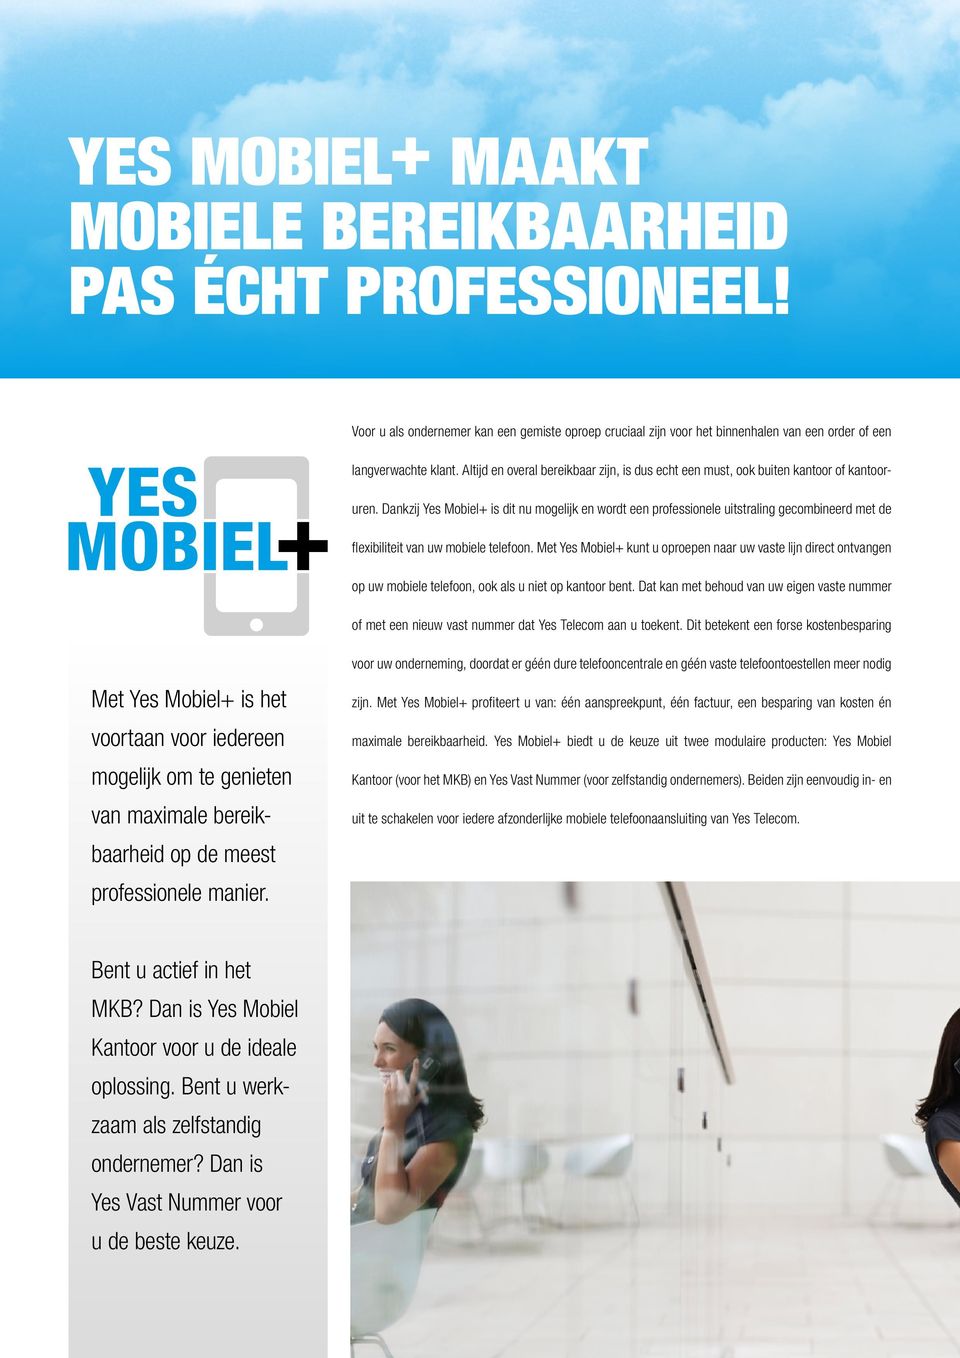 Dankzij Yes Mobiel+ is dit nu mogelijk en wordt een professionele uitstraling gecombineerd met de flexibiliteit van uw mobiele telefoon.